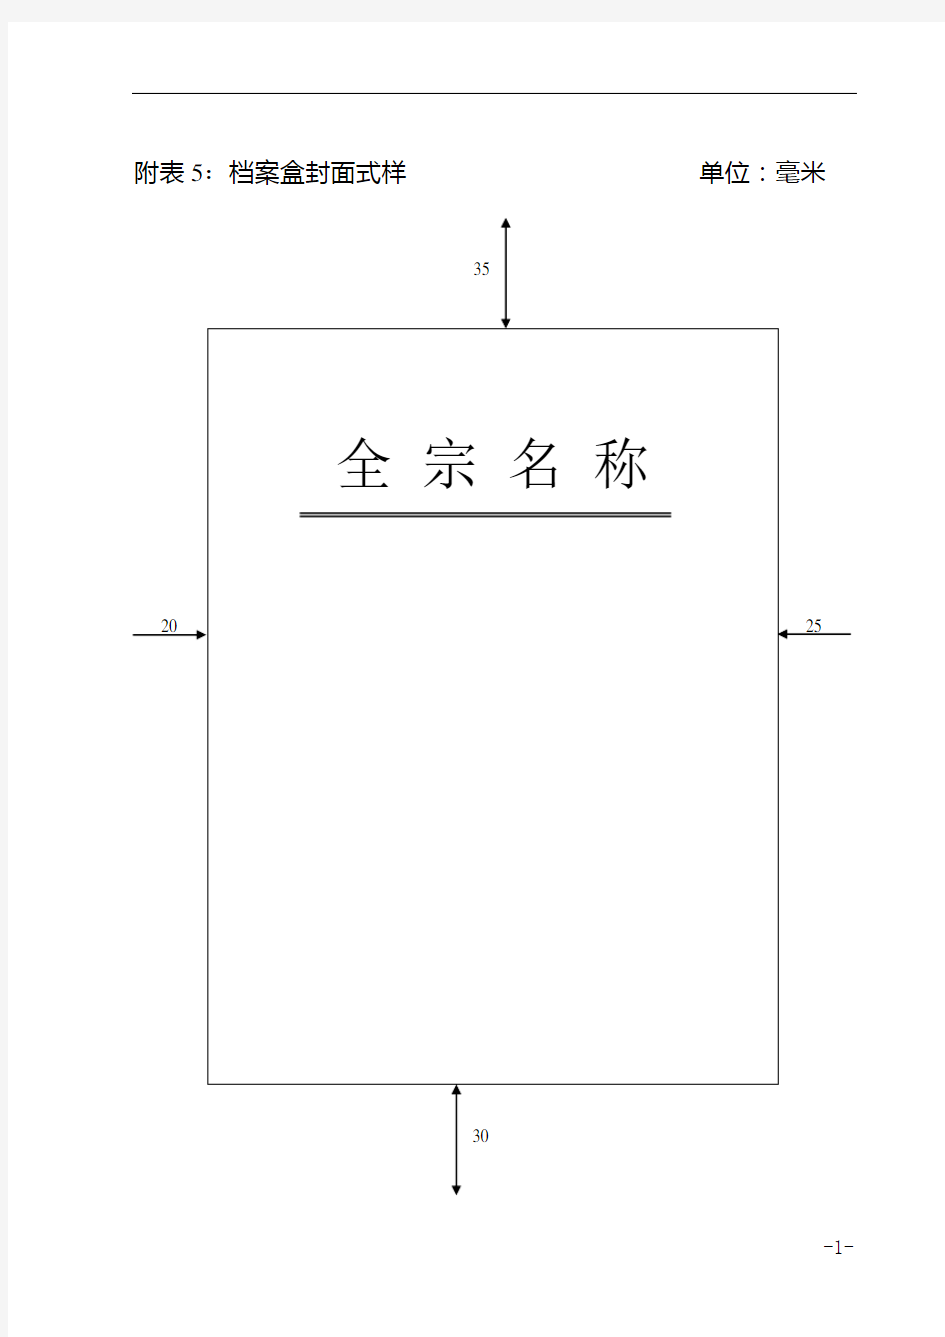 中国铁路工程总公司档案盒封面式样